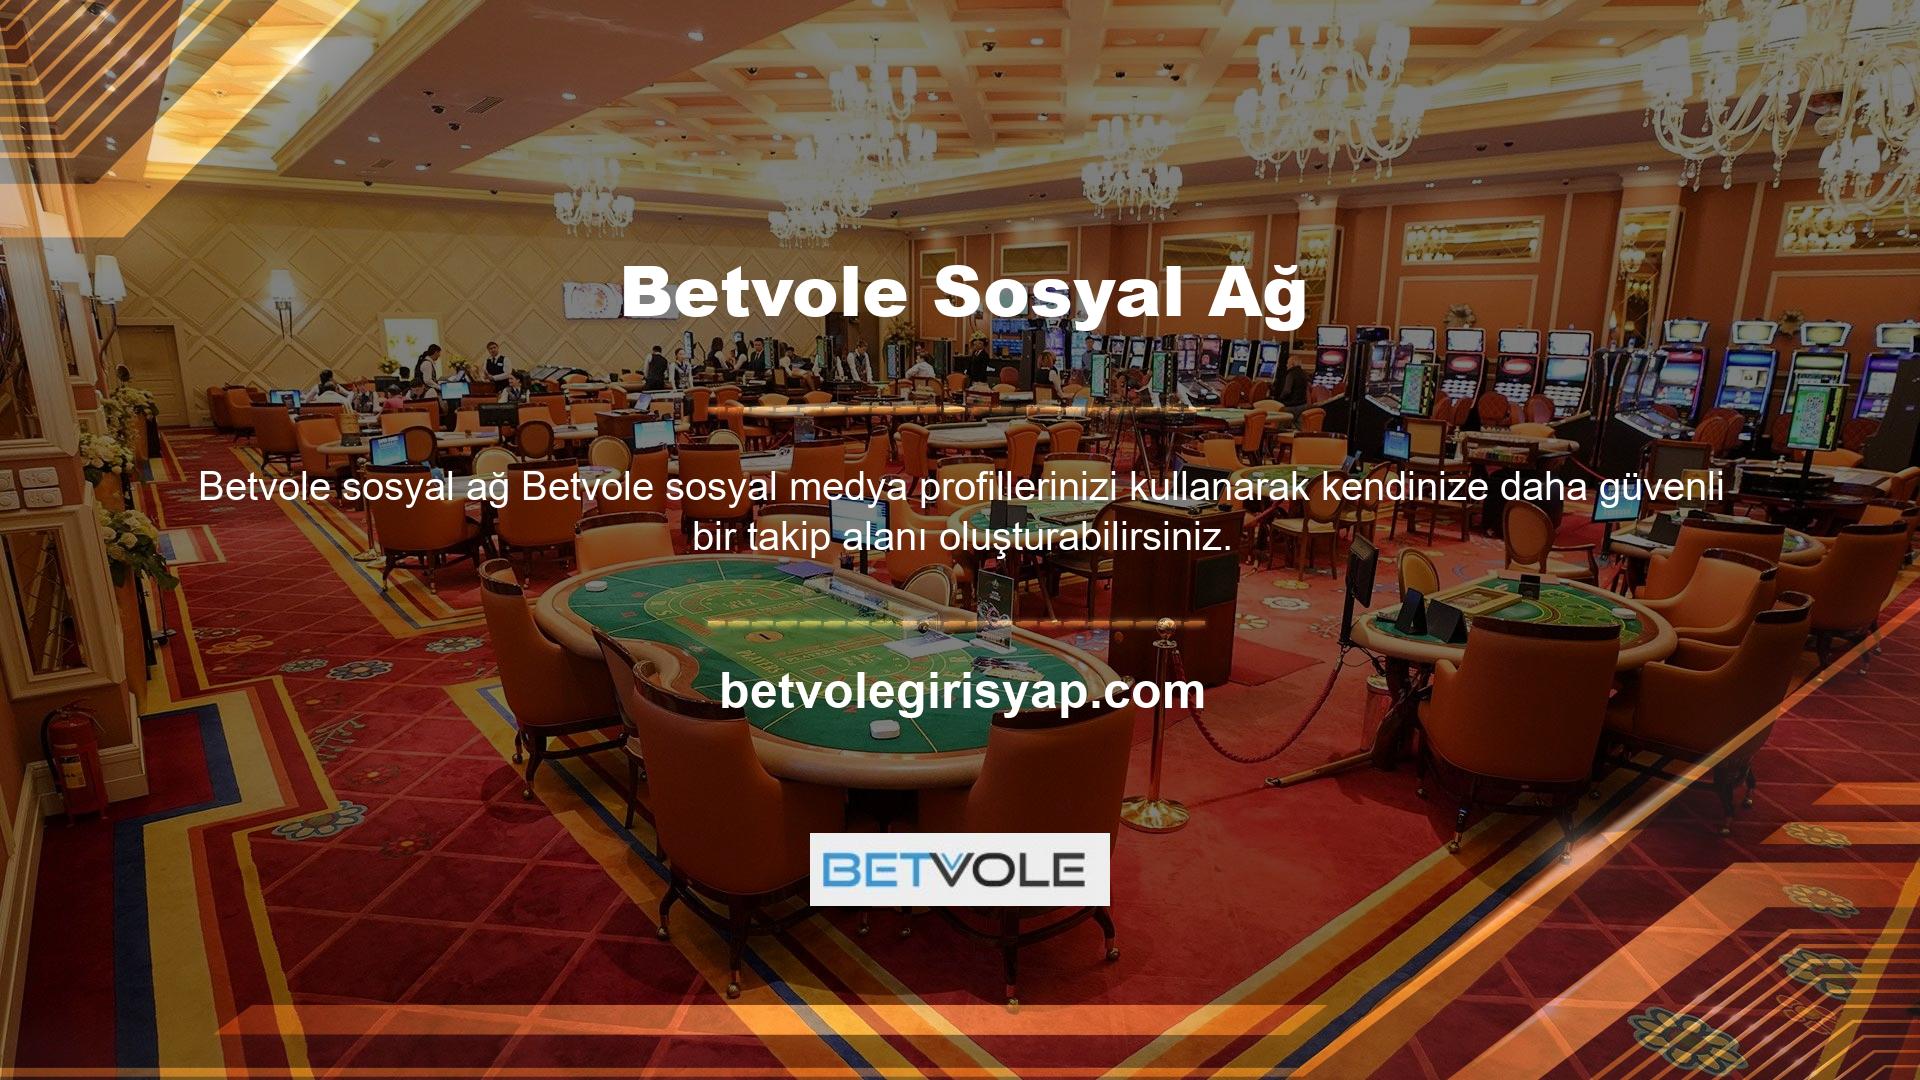 Betvole Twitter hesabınız, site etkinliğinin çeşitli aşamalarını izlemenize olanak tanır